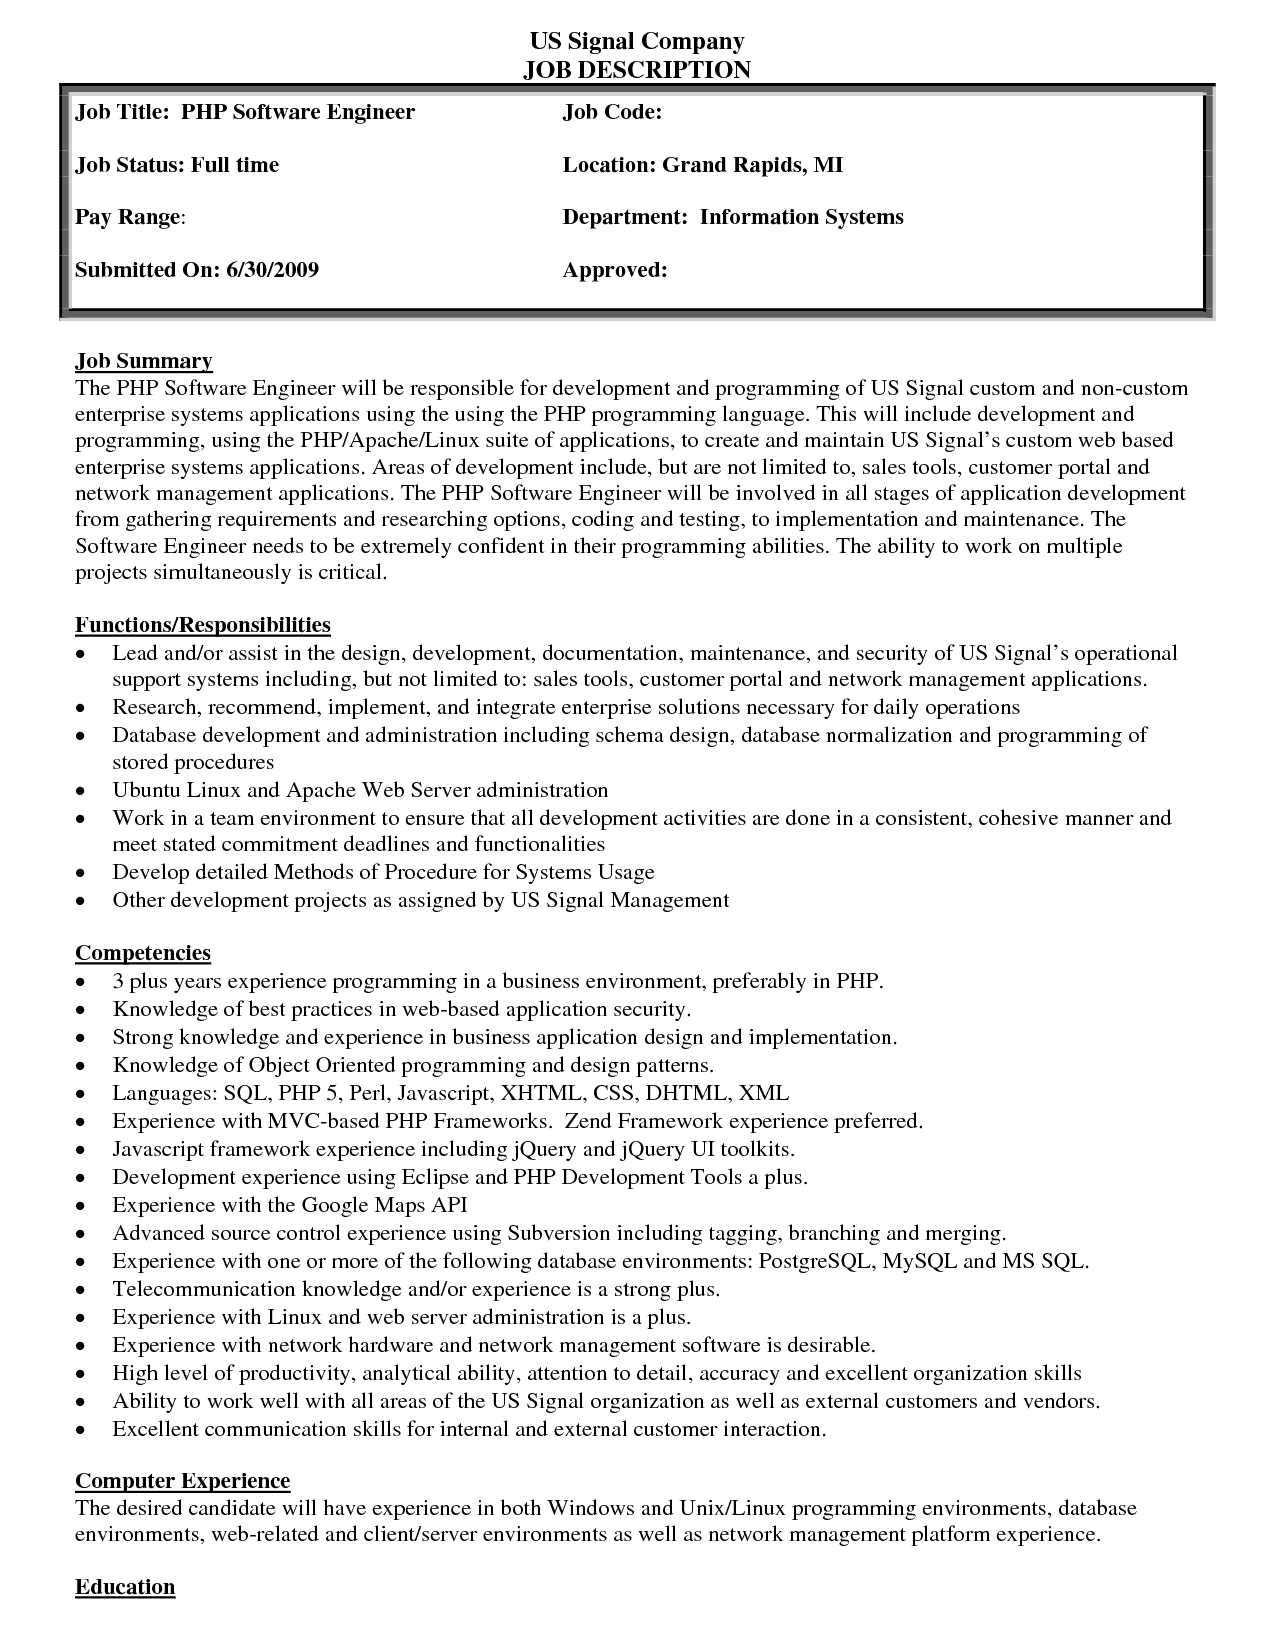 assignment work job description